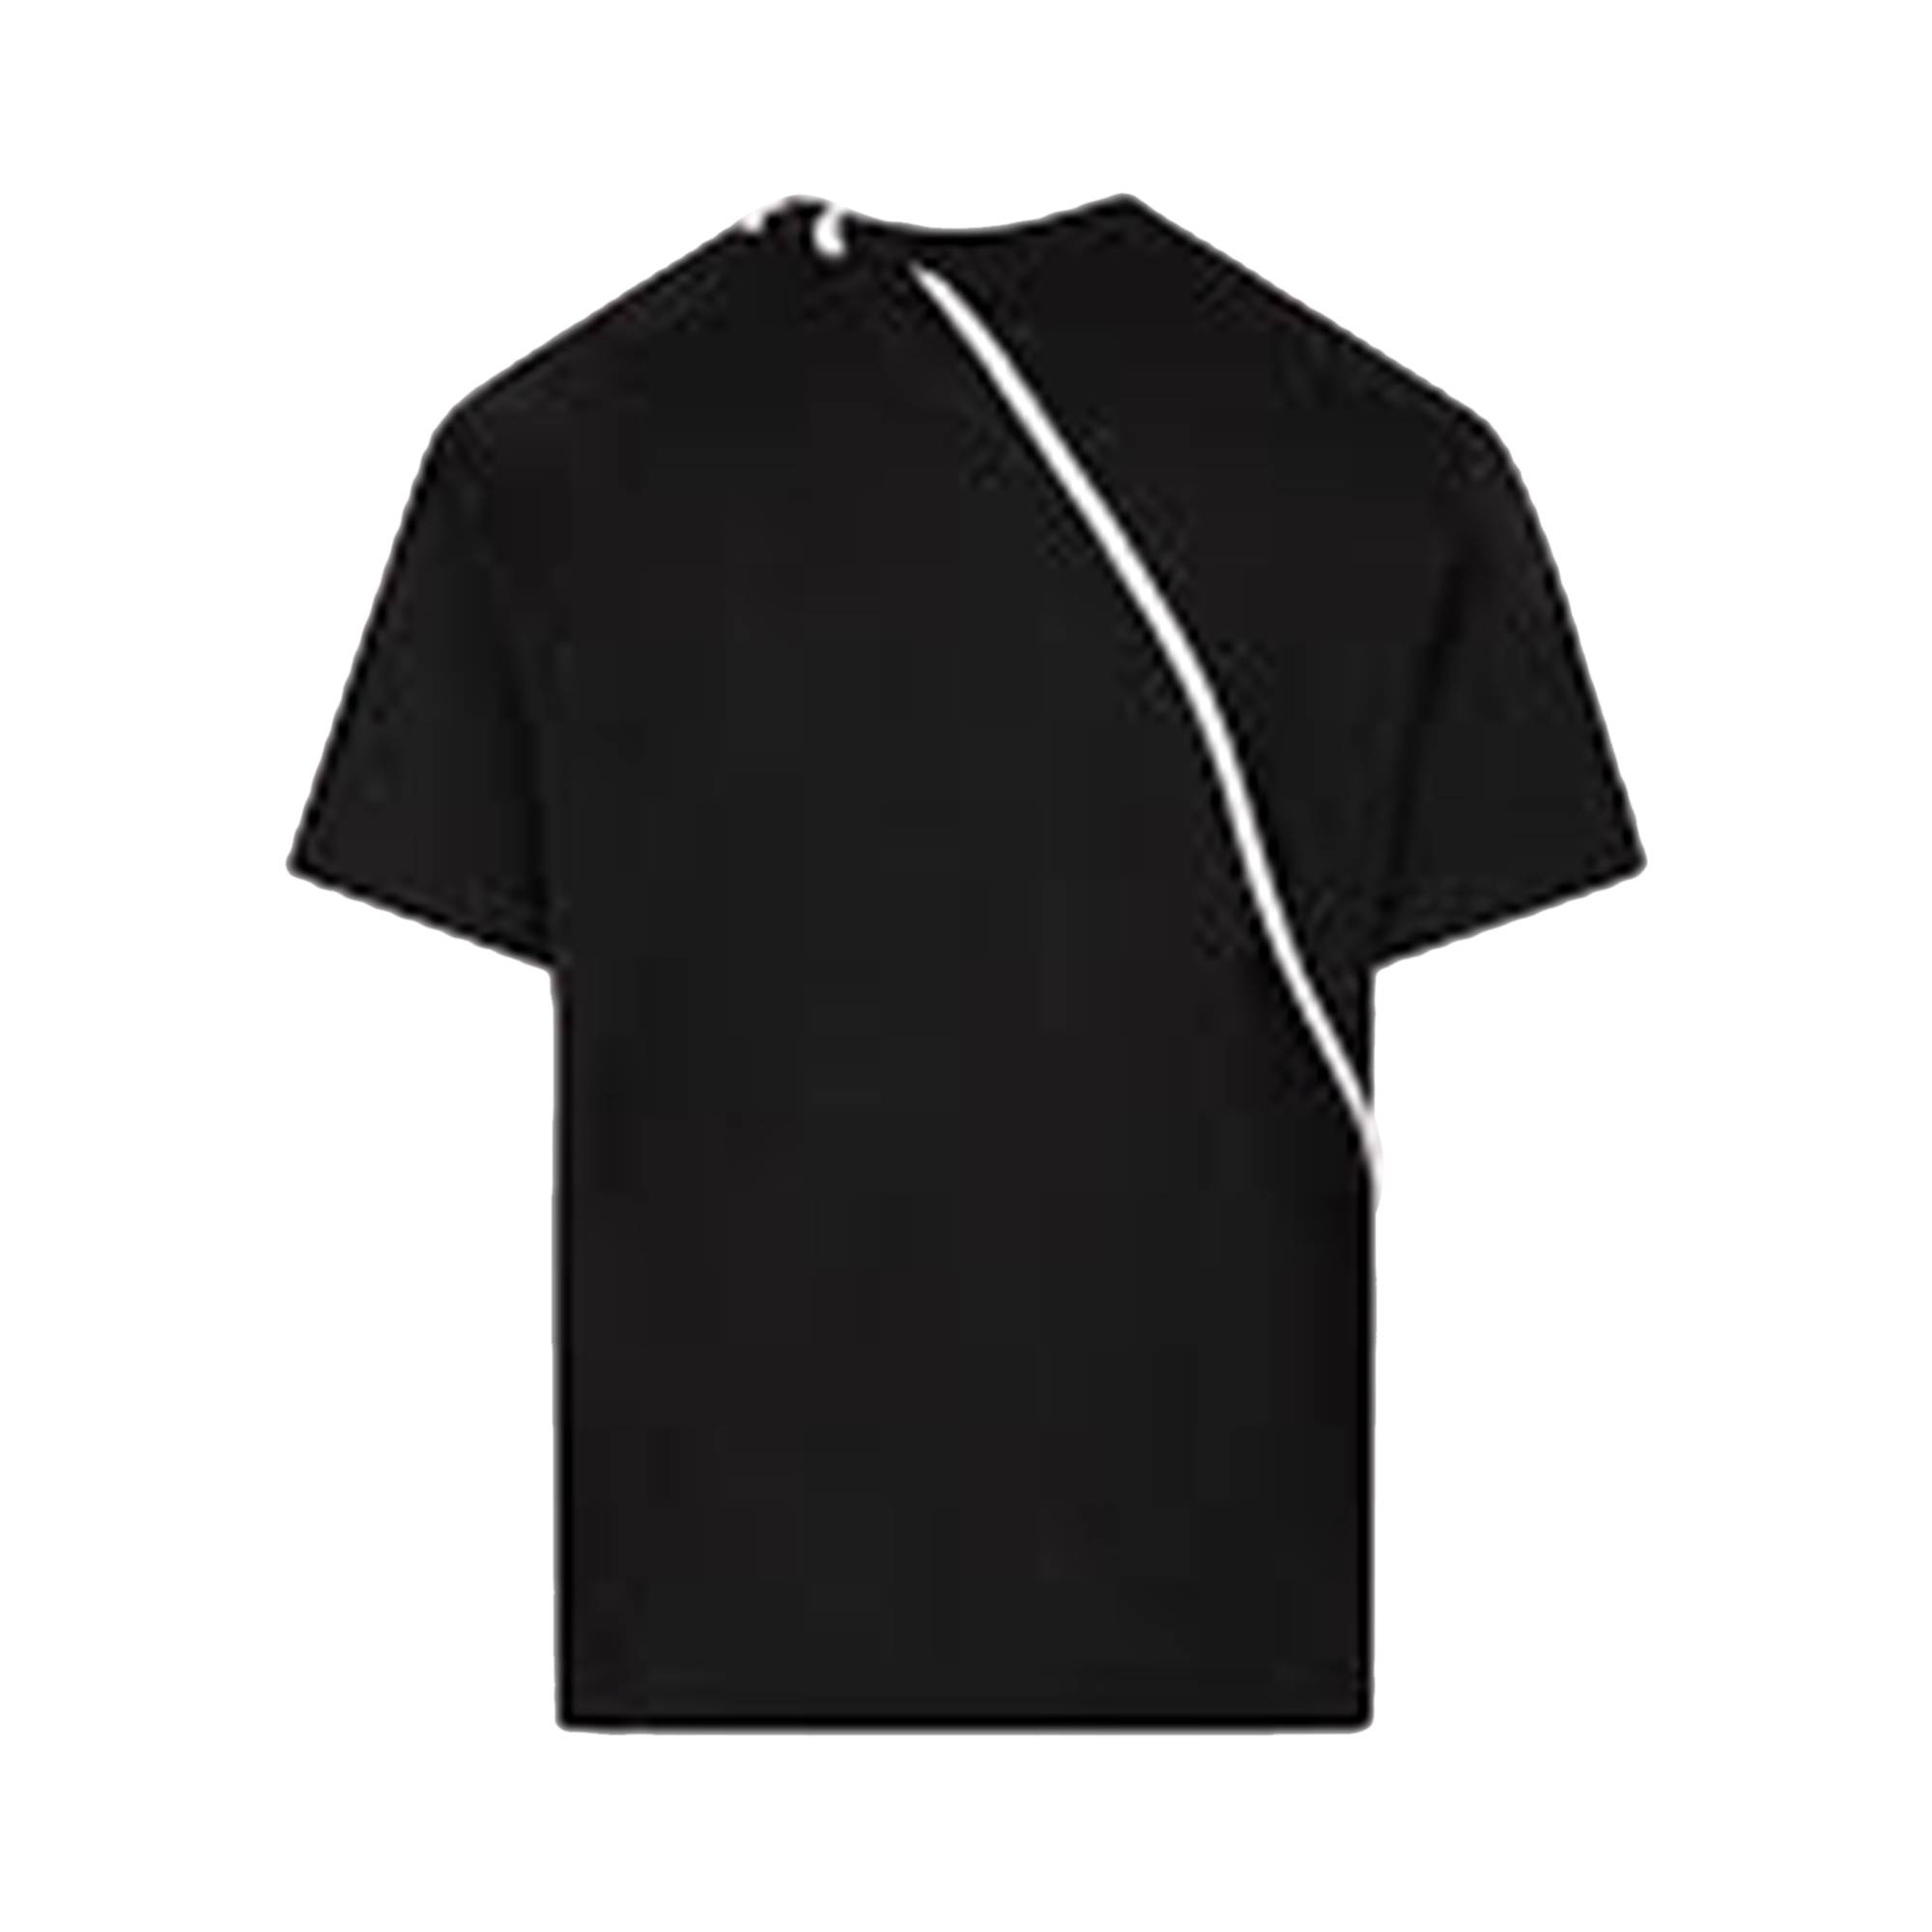 Craig Green Laced T-Shirt 'Black/Cream' - 2